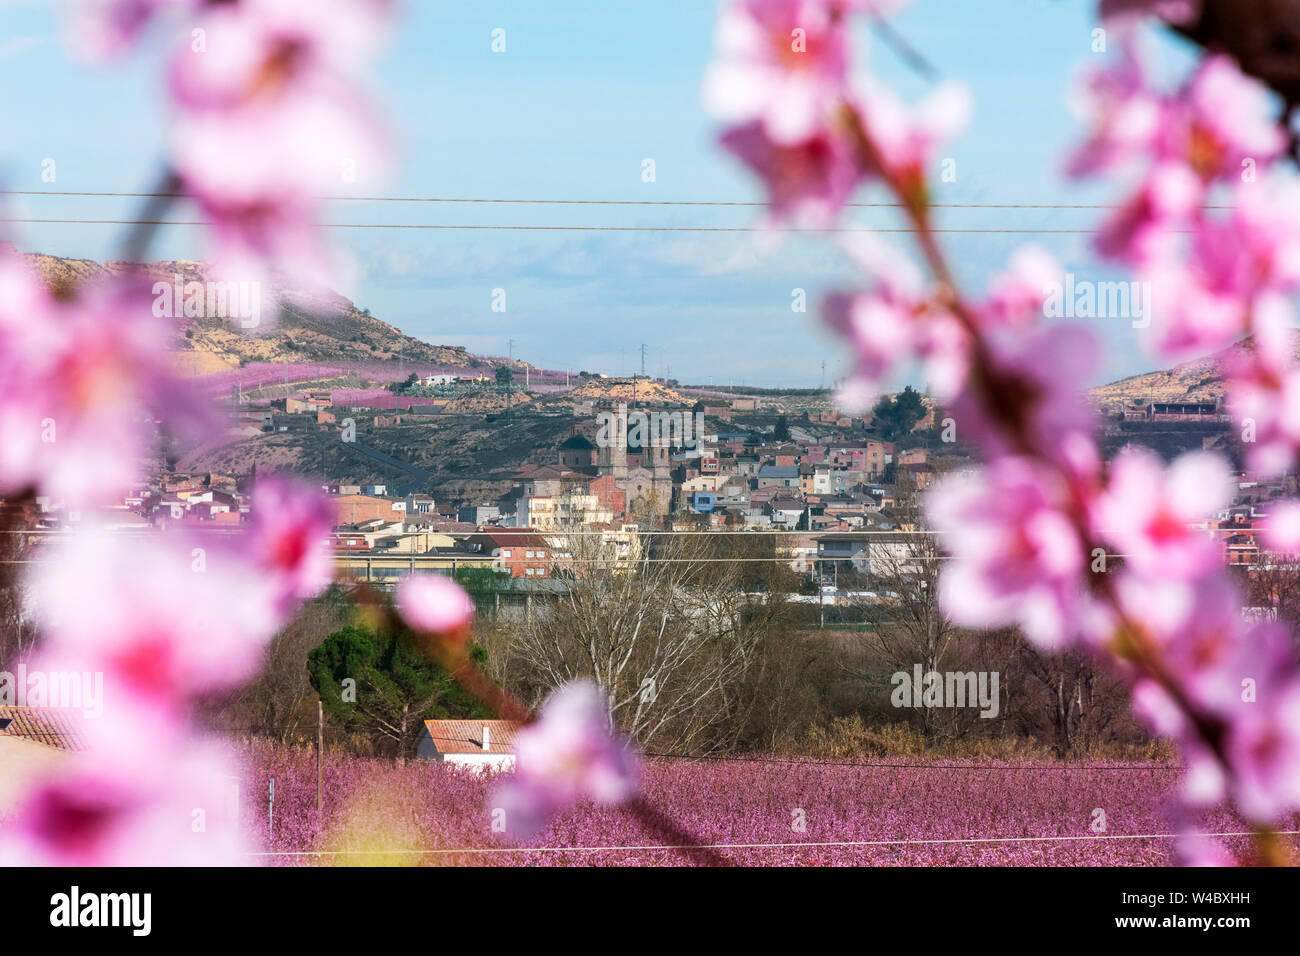 Aitona Landschaft, das Dorf auf dem Hintergrund- und Pfirsichbäume blühen im Vordergrund. Voll mit zarten rosa Blumen bei Sonnenaufgang. Friedliche atmosph Stockfoto